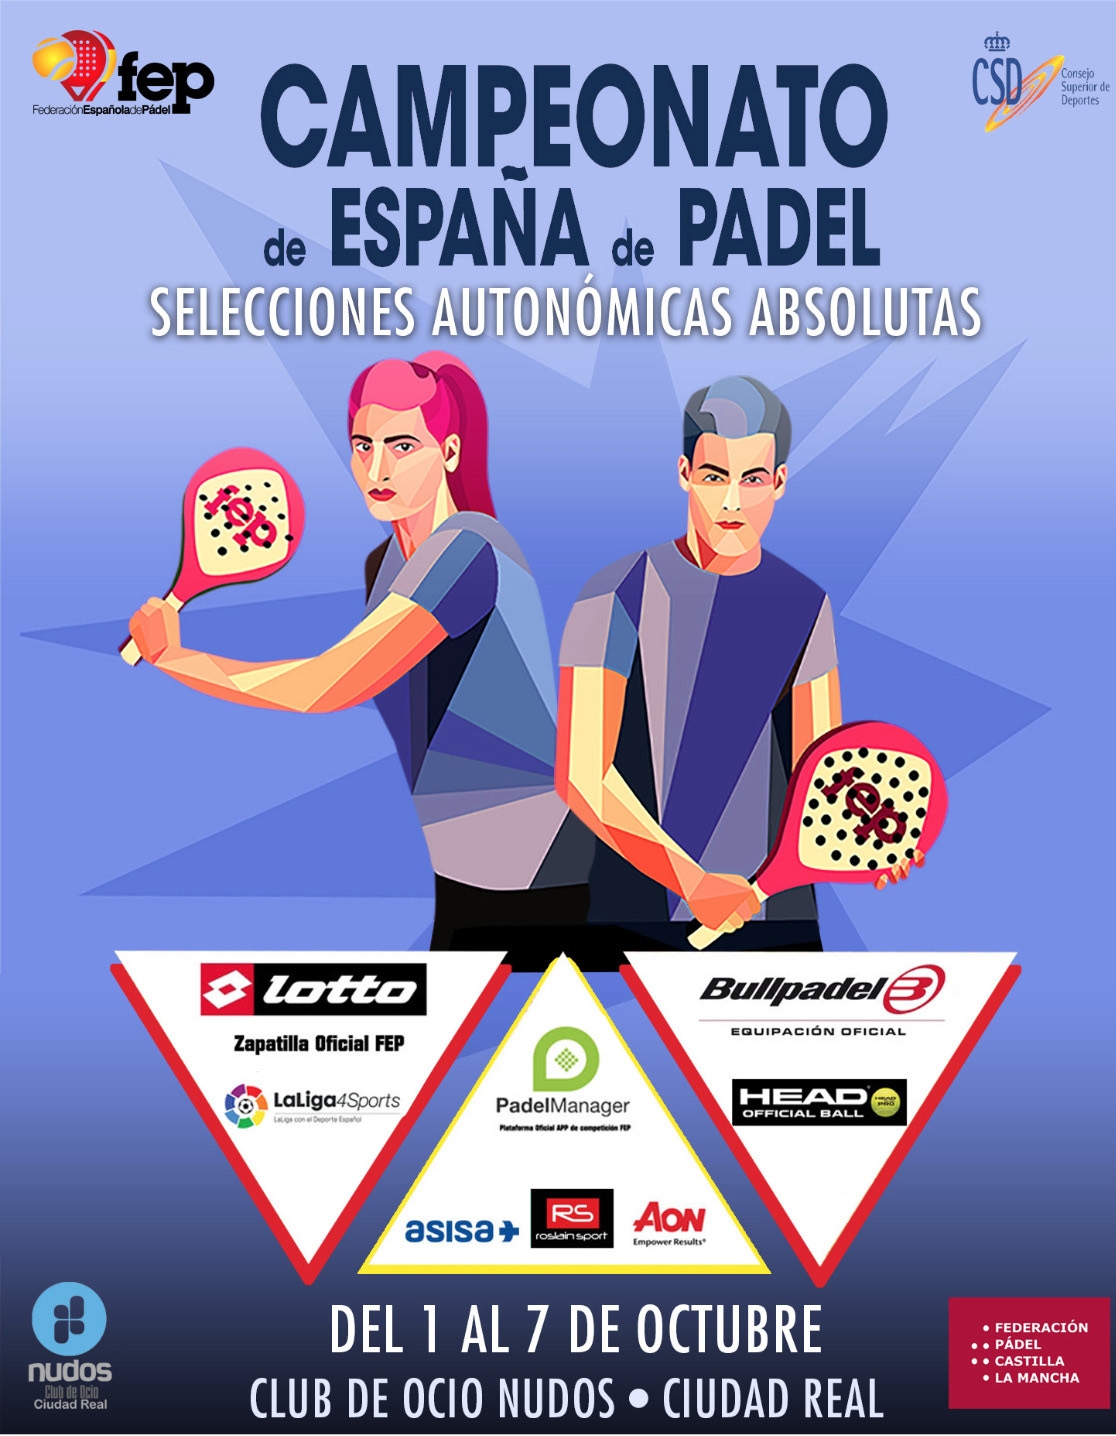 Campeonato de pádel de selecciones autonómicas de España